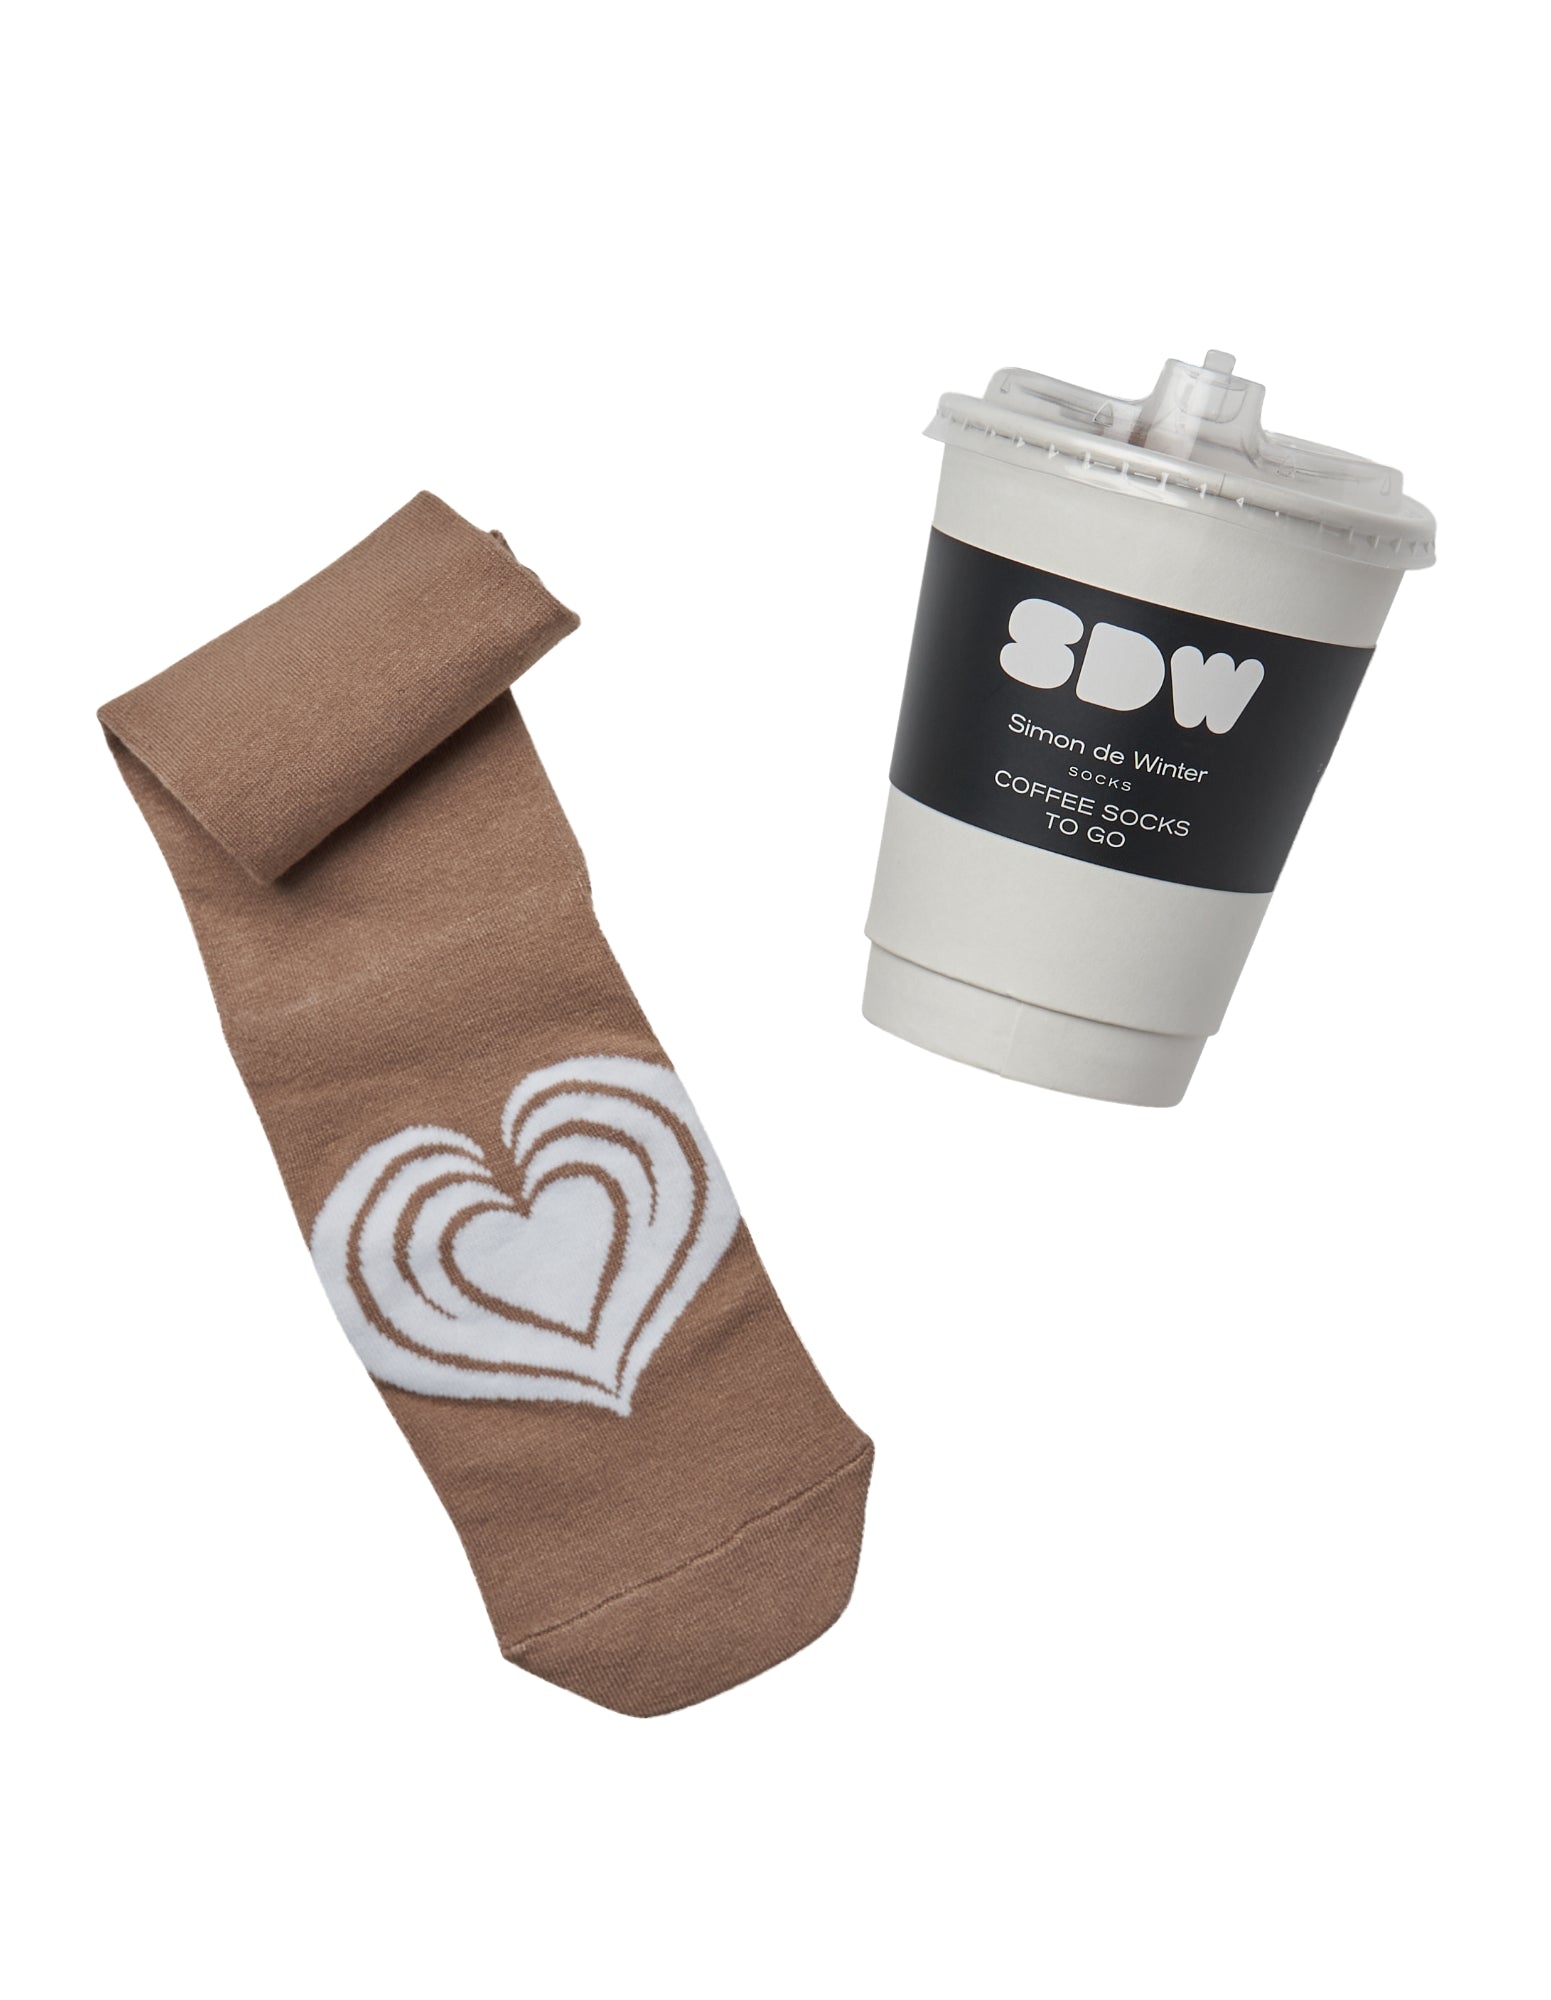 Simon de Winter Women's Coffee Cup Socks in coffee packaging